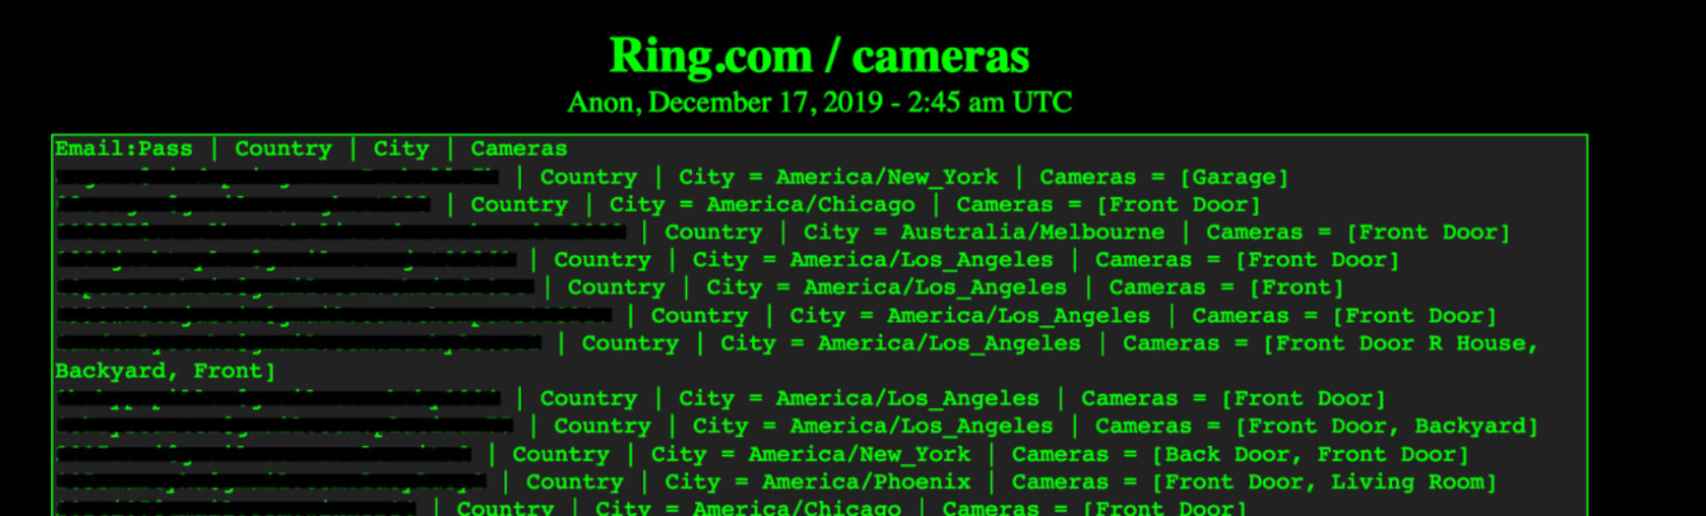 Datos de acceso de cámaras Ring